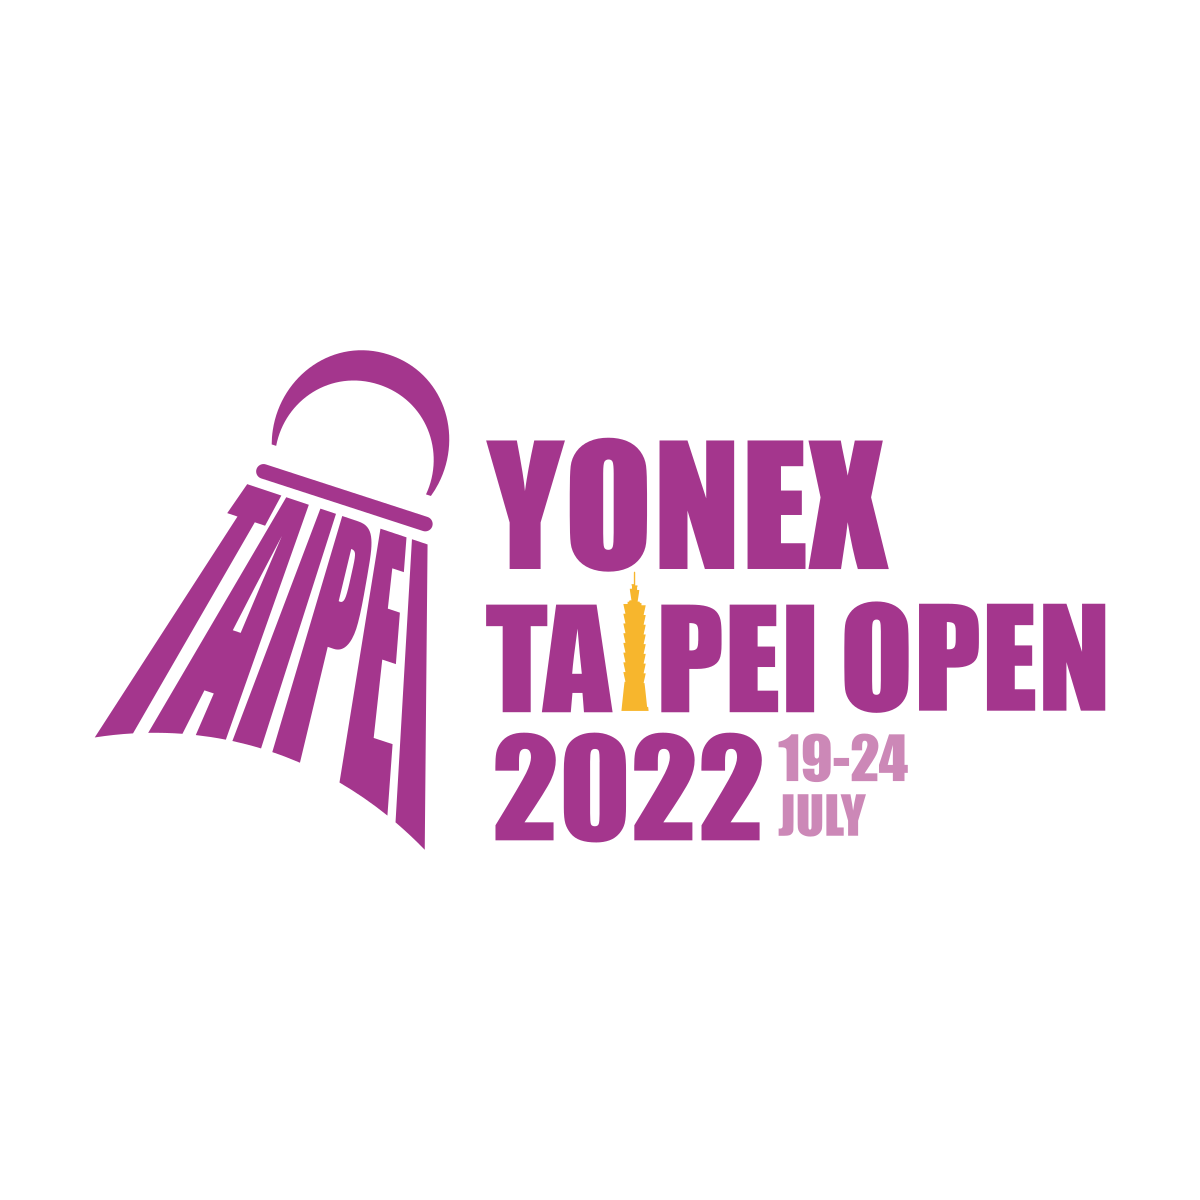 BWF 2023台北羽球公开赛,戴资颖